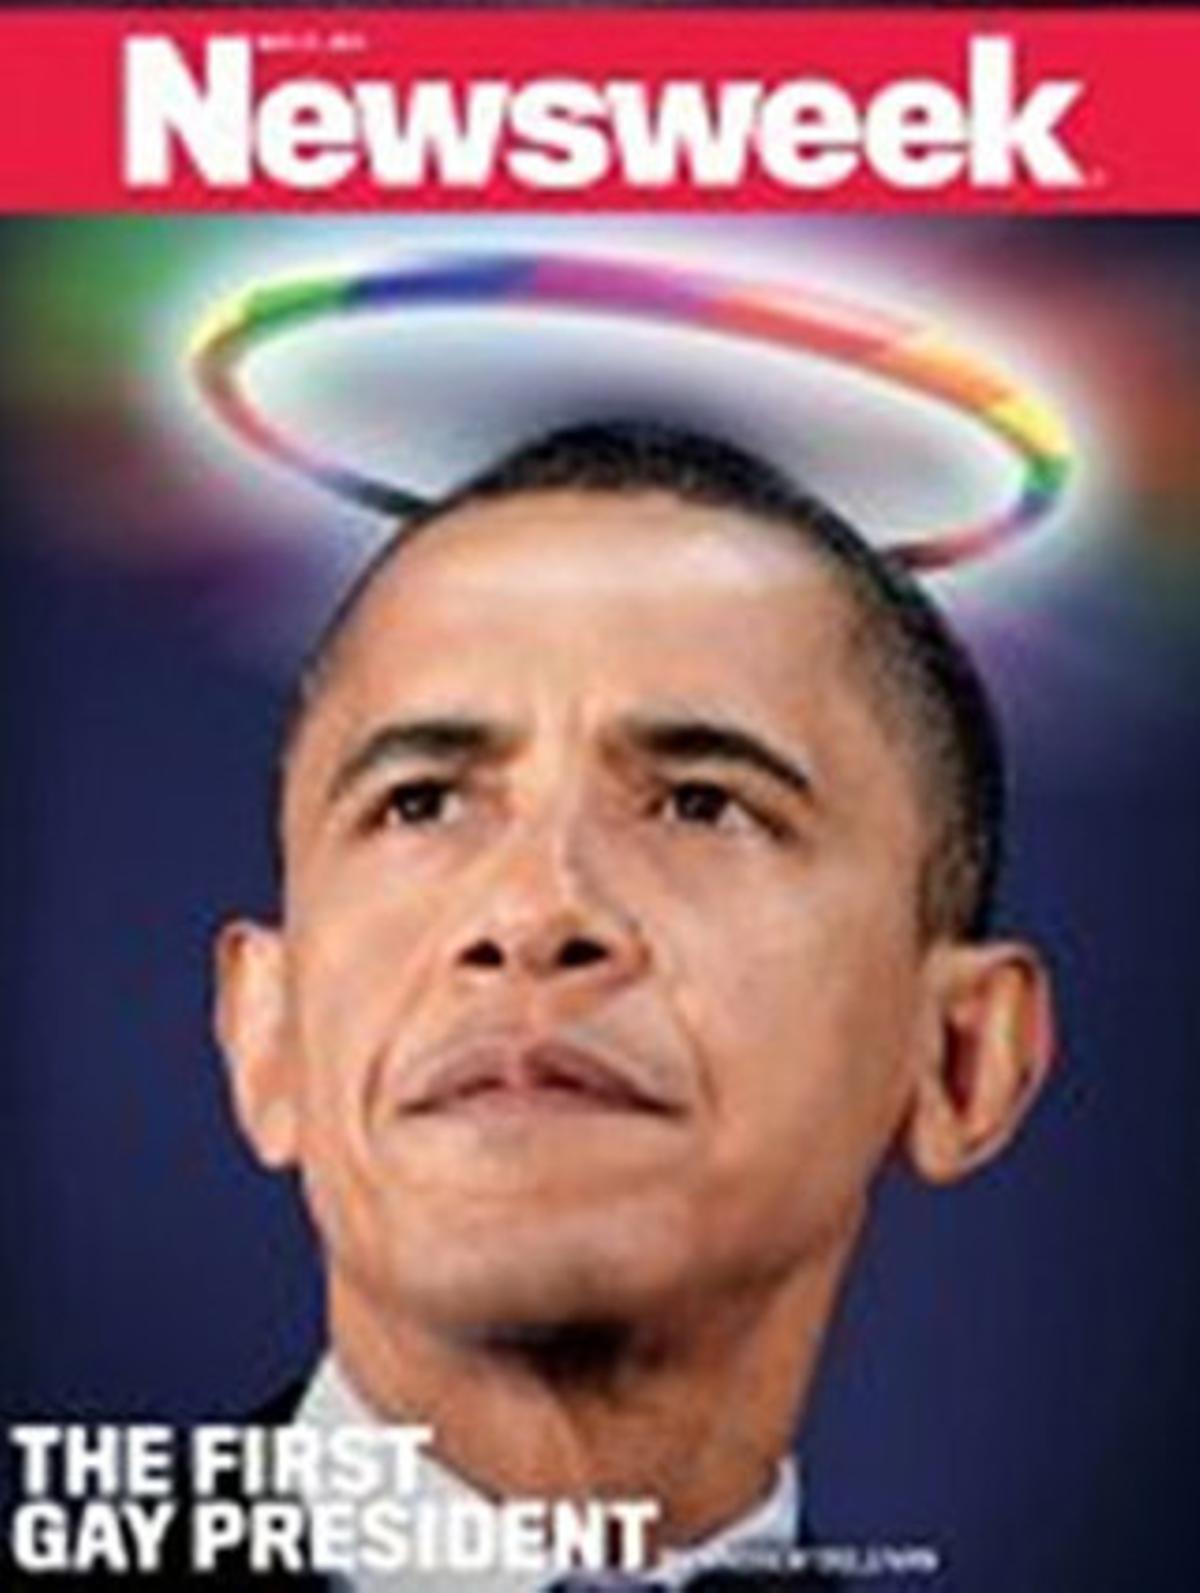 Portada d’aquesta setmana de la revista ’Newsweek’, dedicada a Obama, el primer president gai.